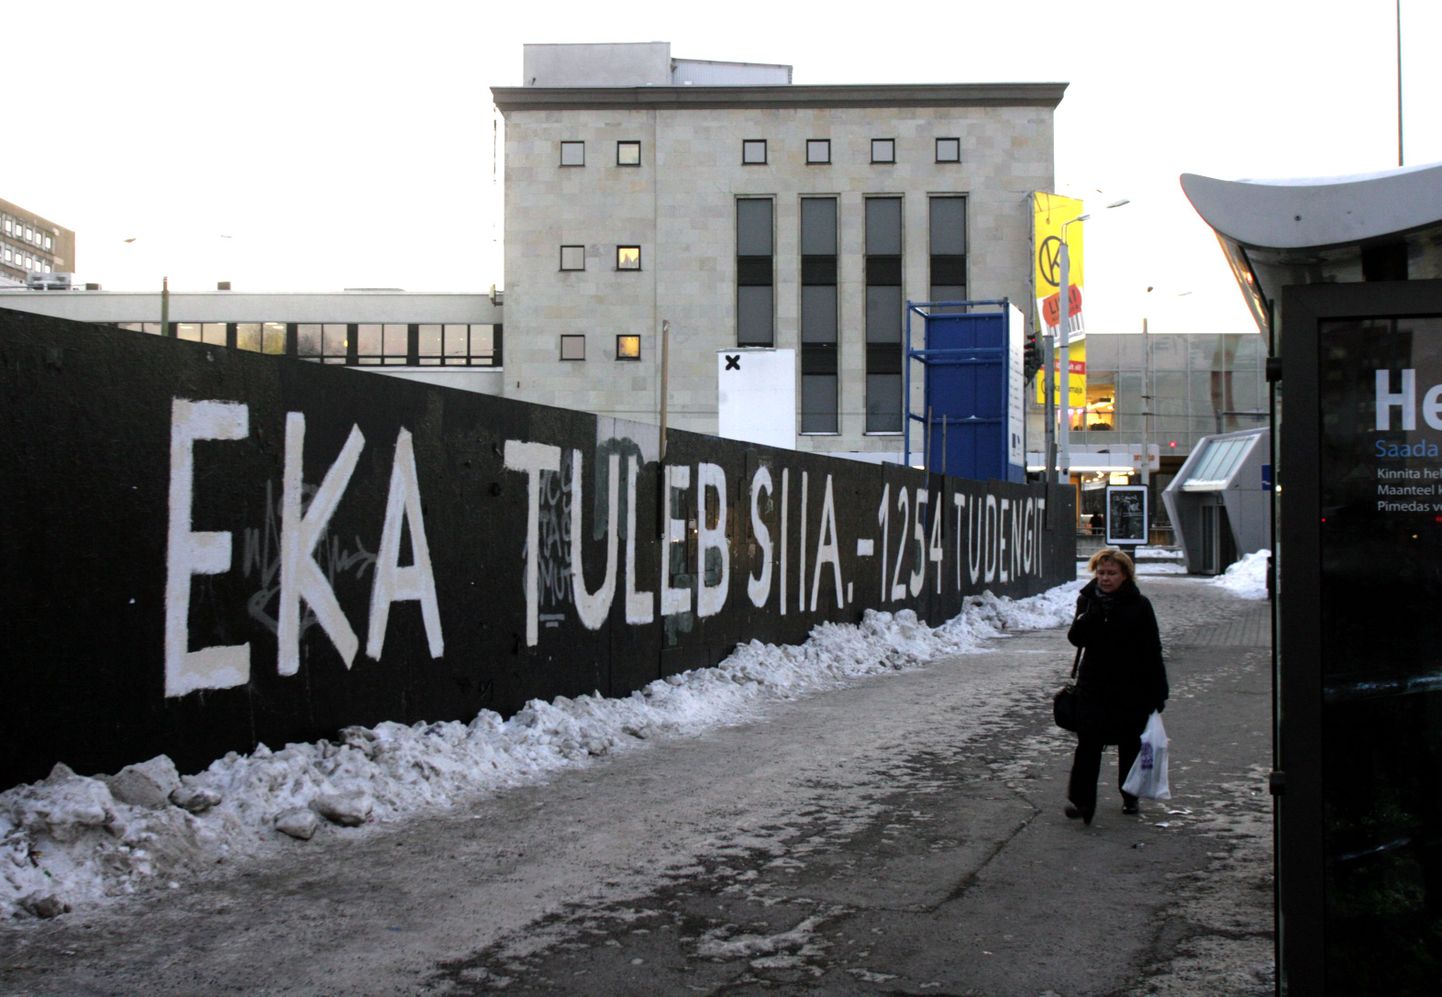 Loosung Eesti Kunstiakadeemia ehitusplatsi ümbritseval plangul.